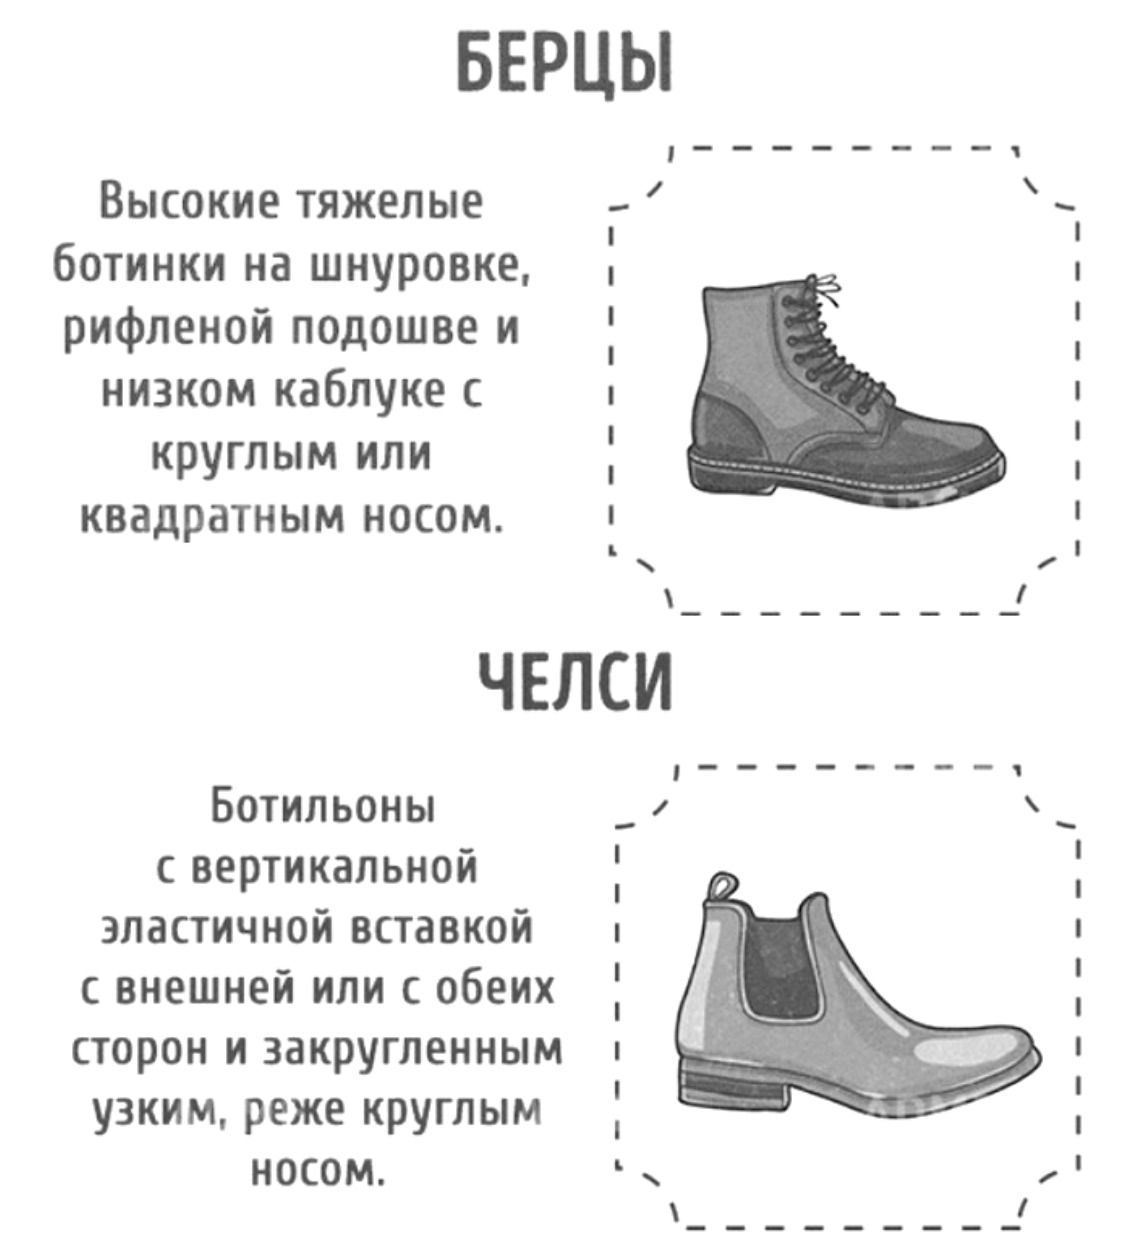 Название моделей обуви